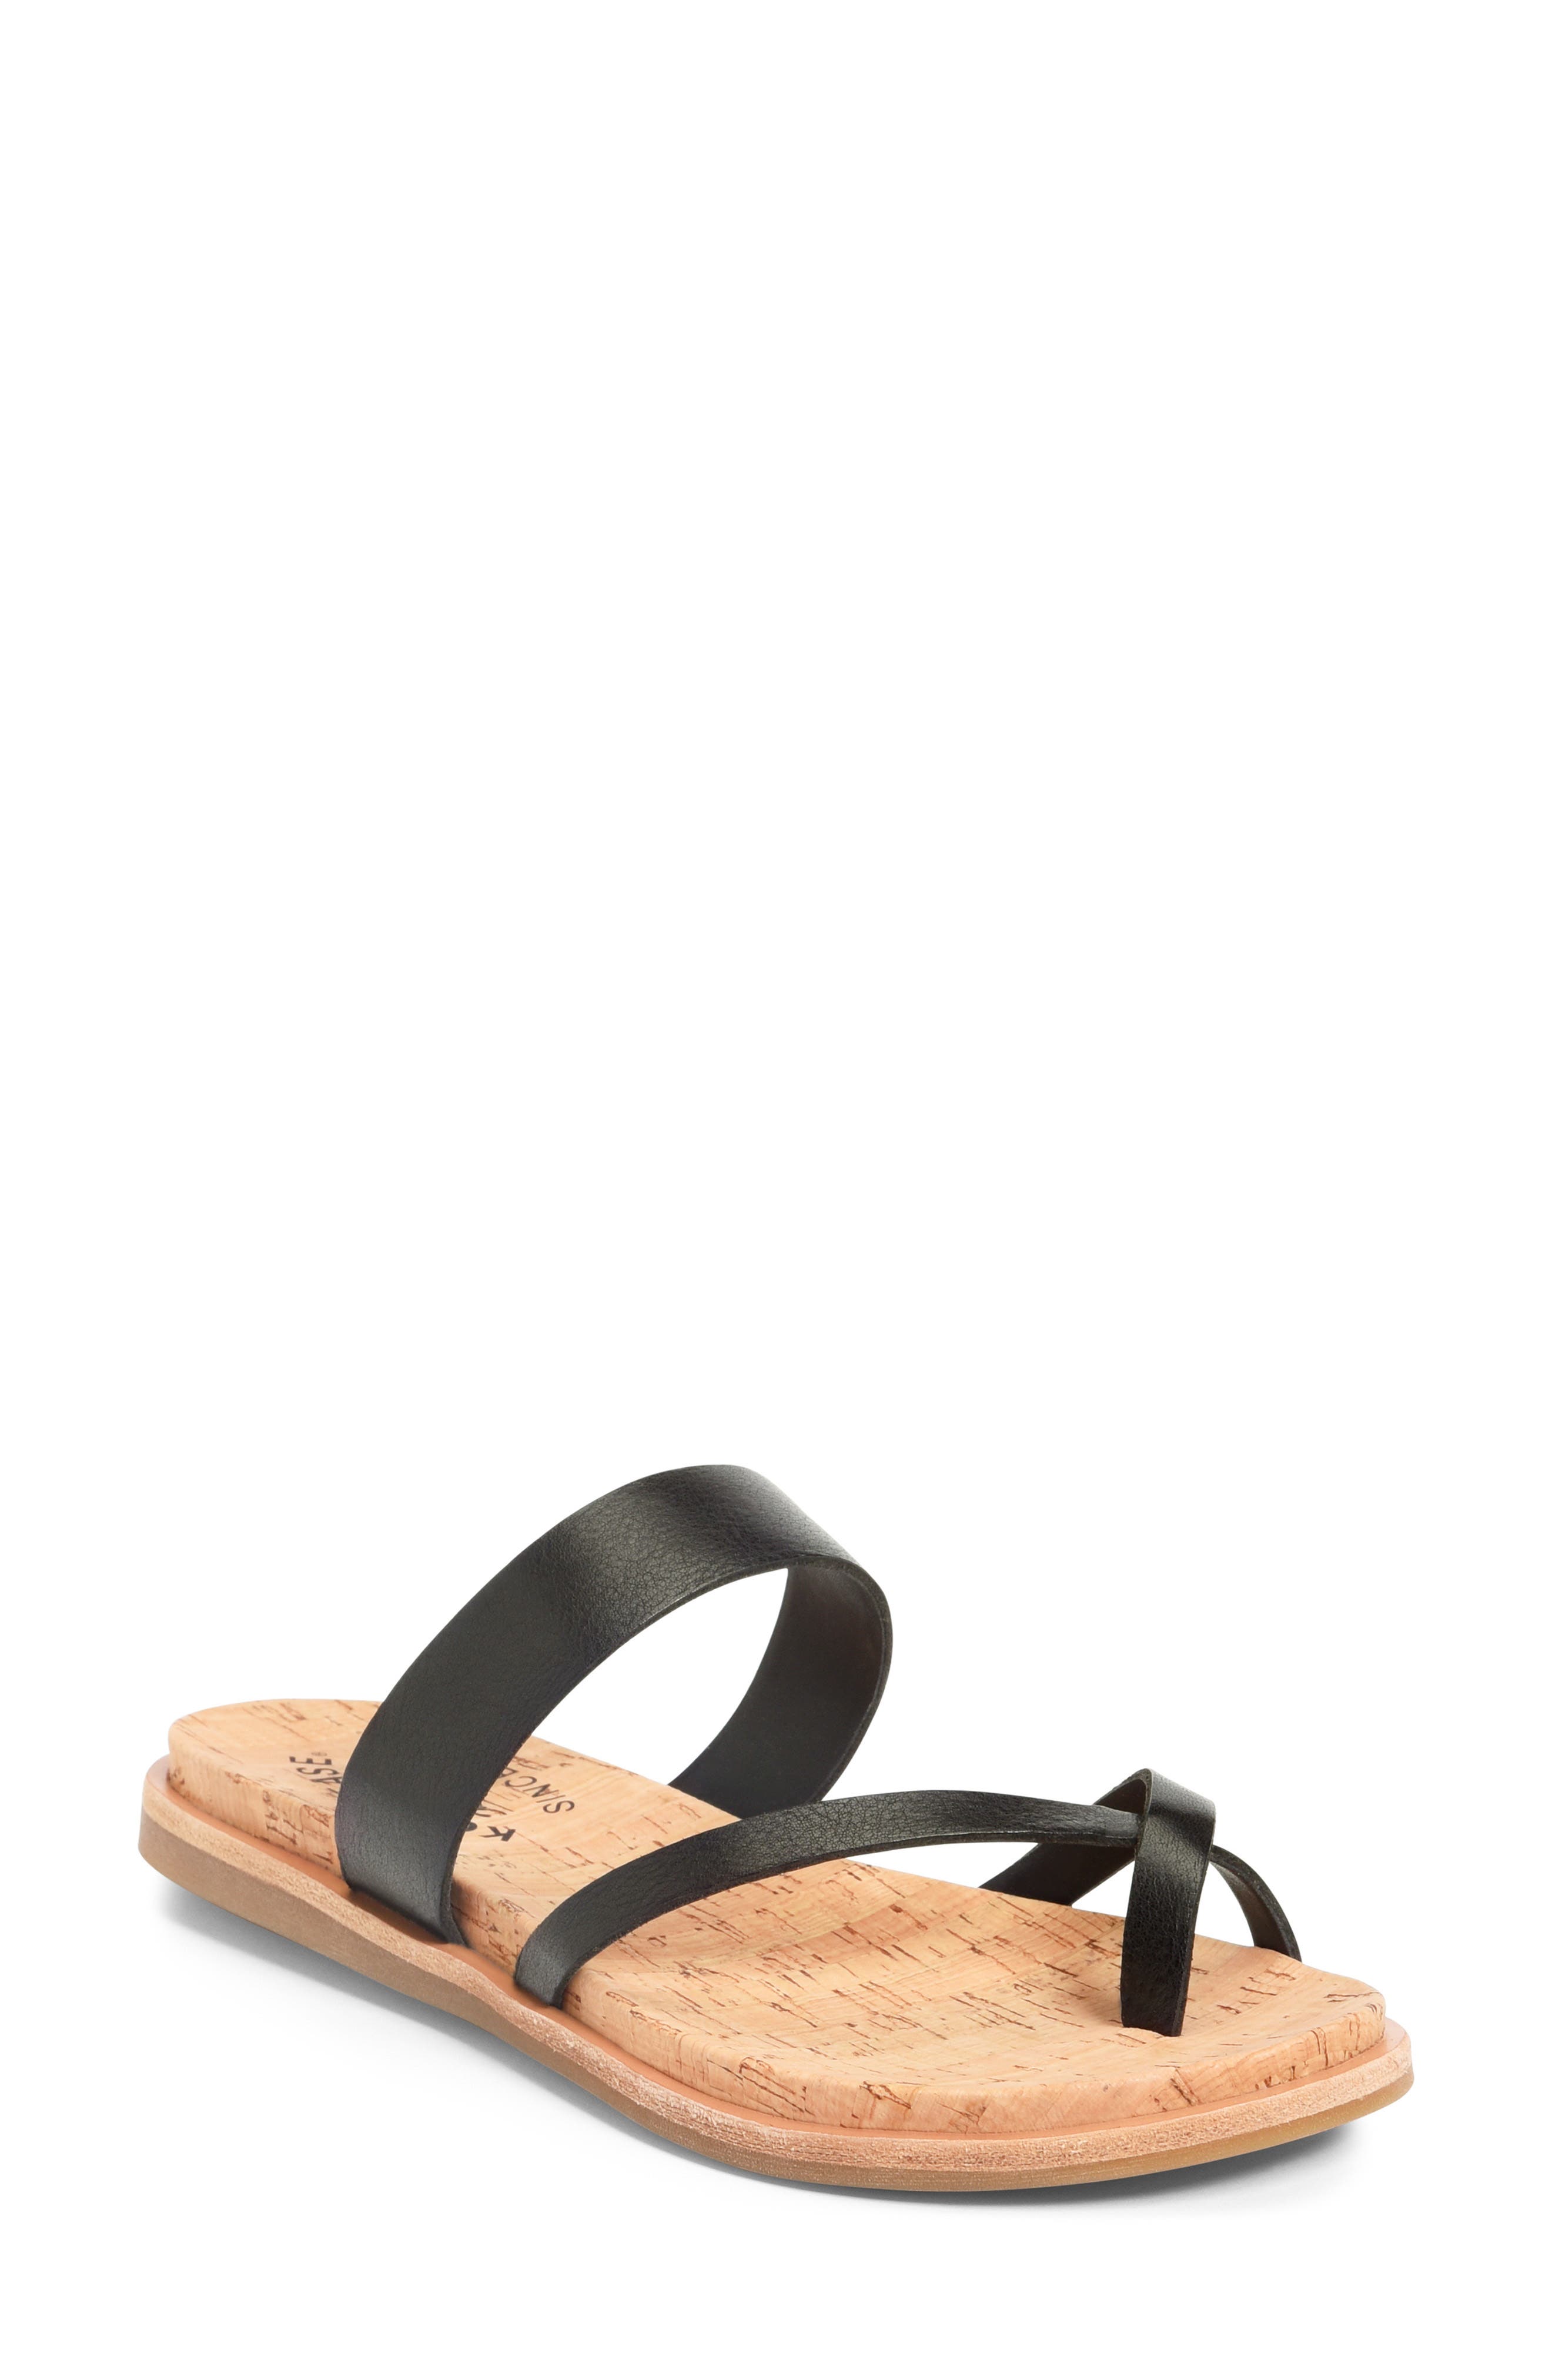 Kork-Ease(R) Belinda Slide Sandal in Black Leather at Nordstrom, Size 6 ...